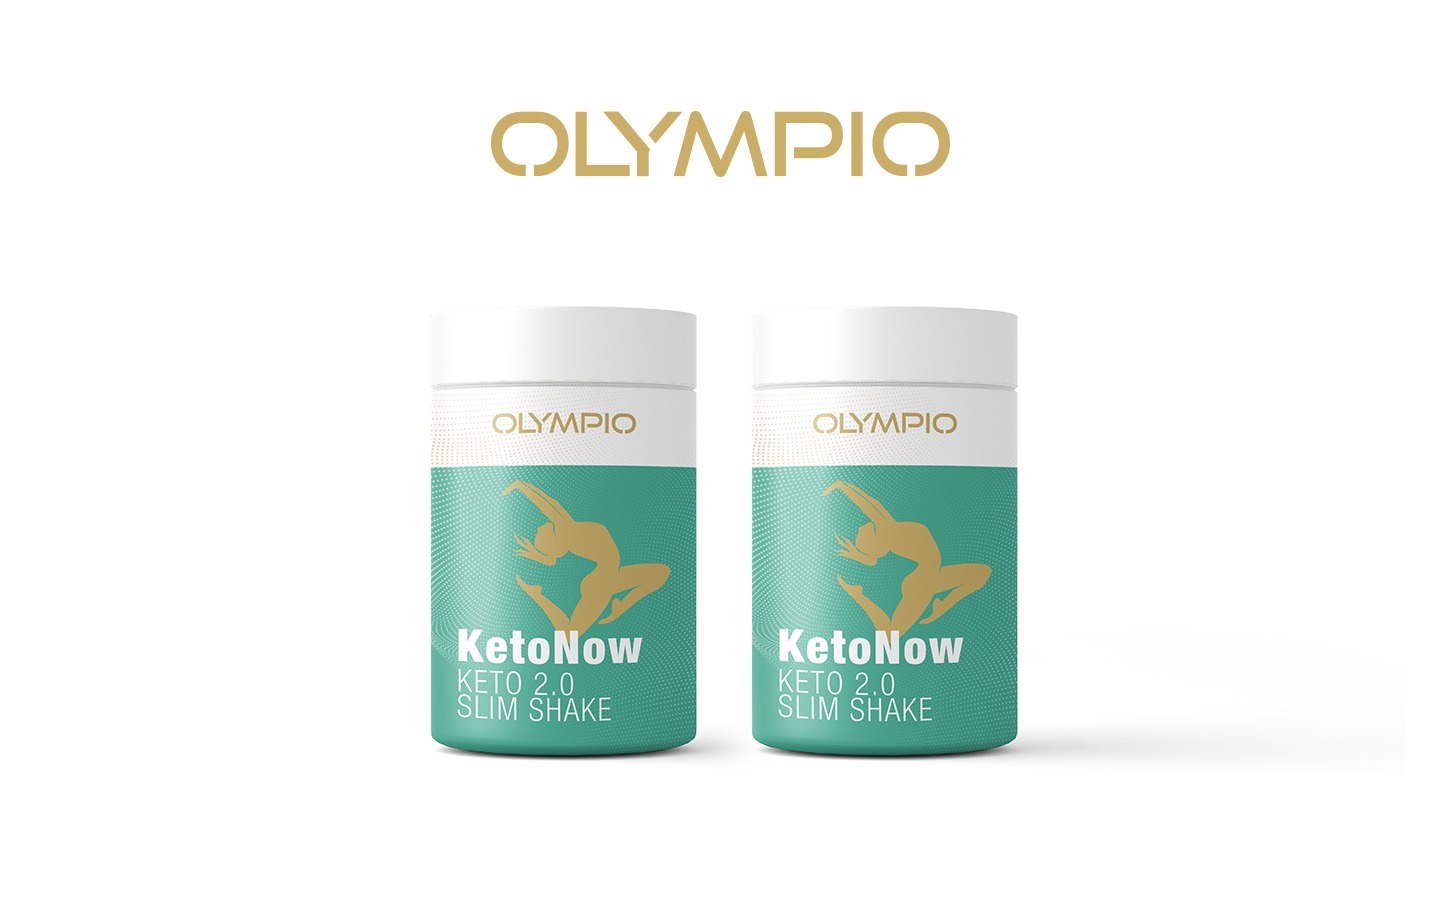 Olympio - KetoNow 2.0 Slim Shake , der moderne Weg um einfacher Gewicht zu verlieren und länger & gesünder zu leben! - Deal Ende 20.03.2023